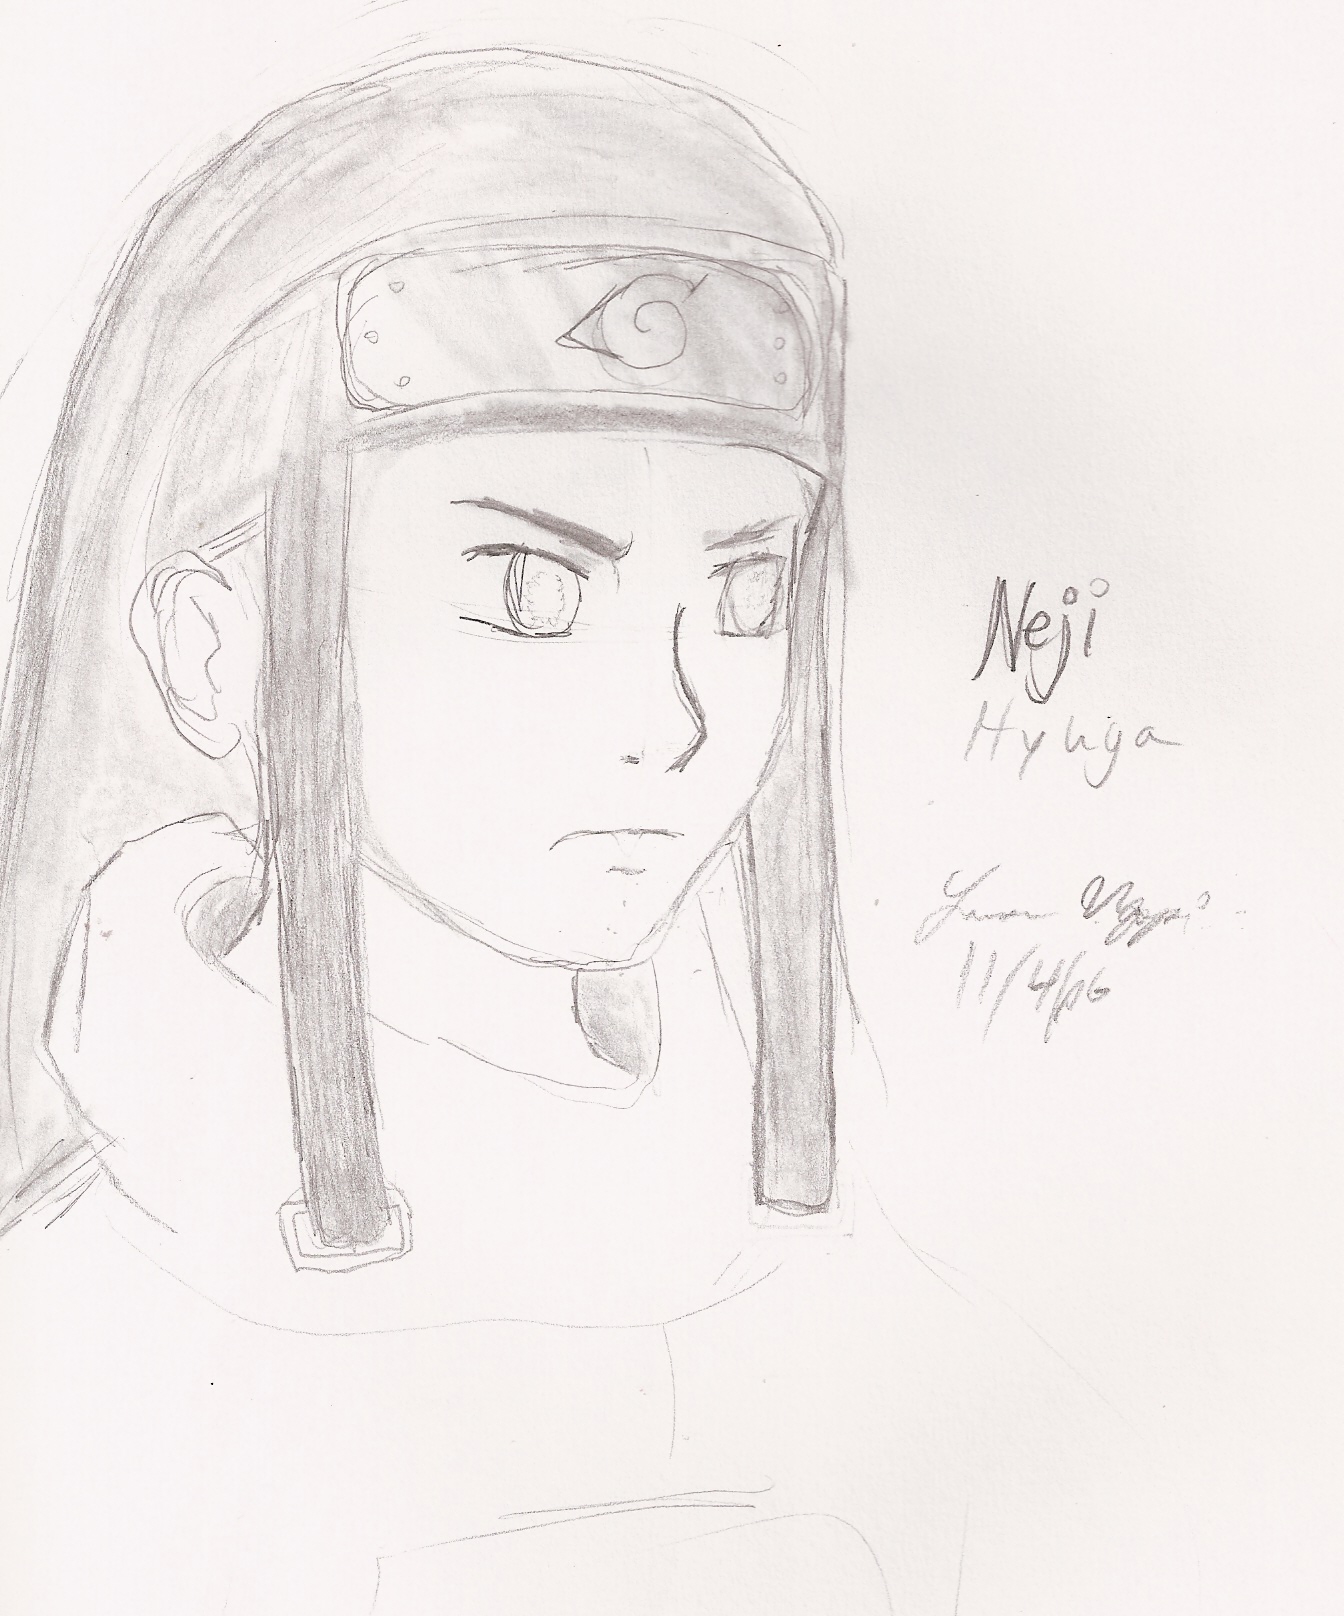 Neji Hyuga by ZeldaGirl9793